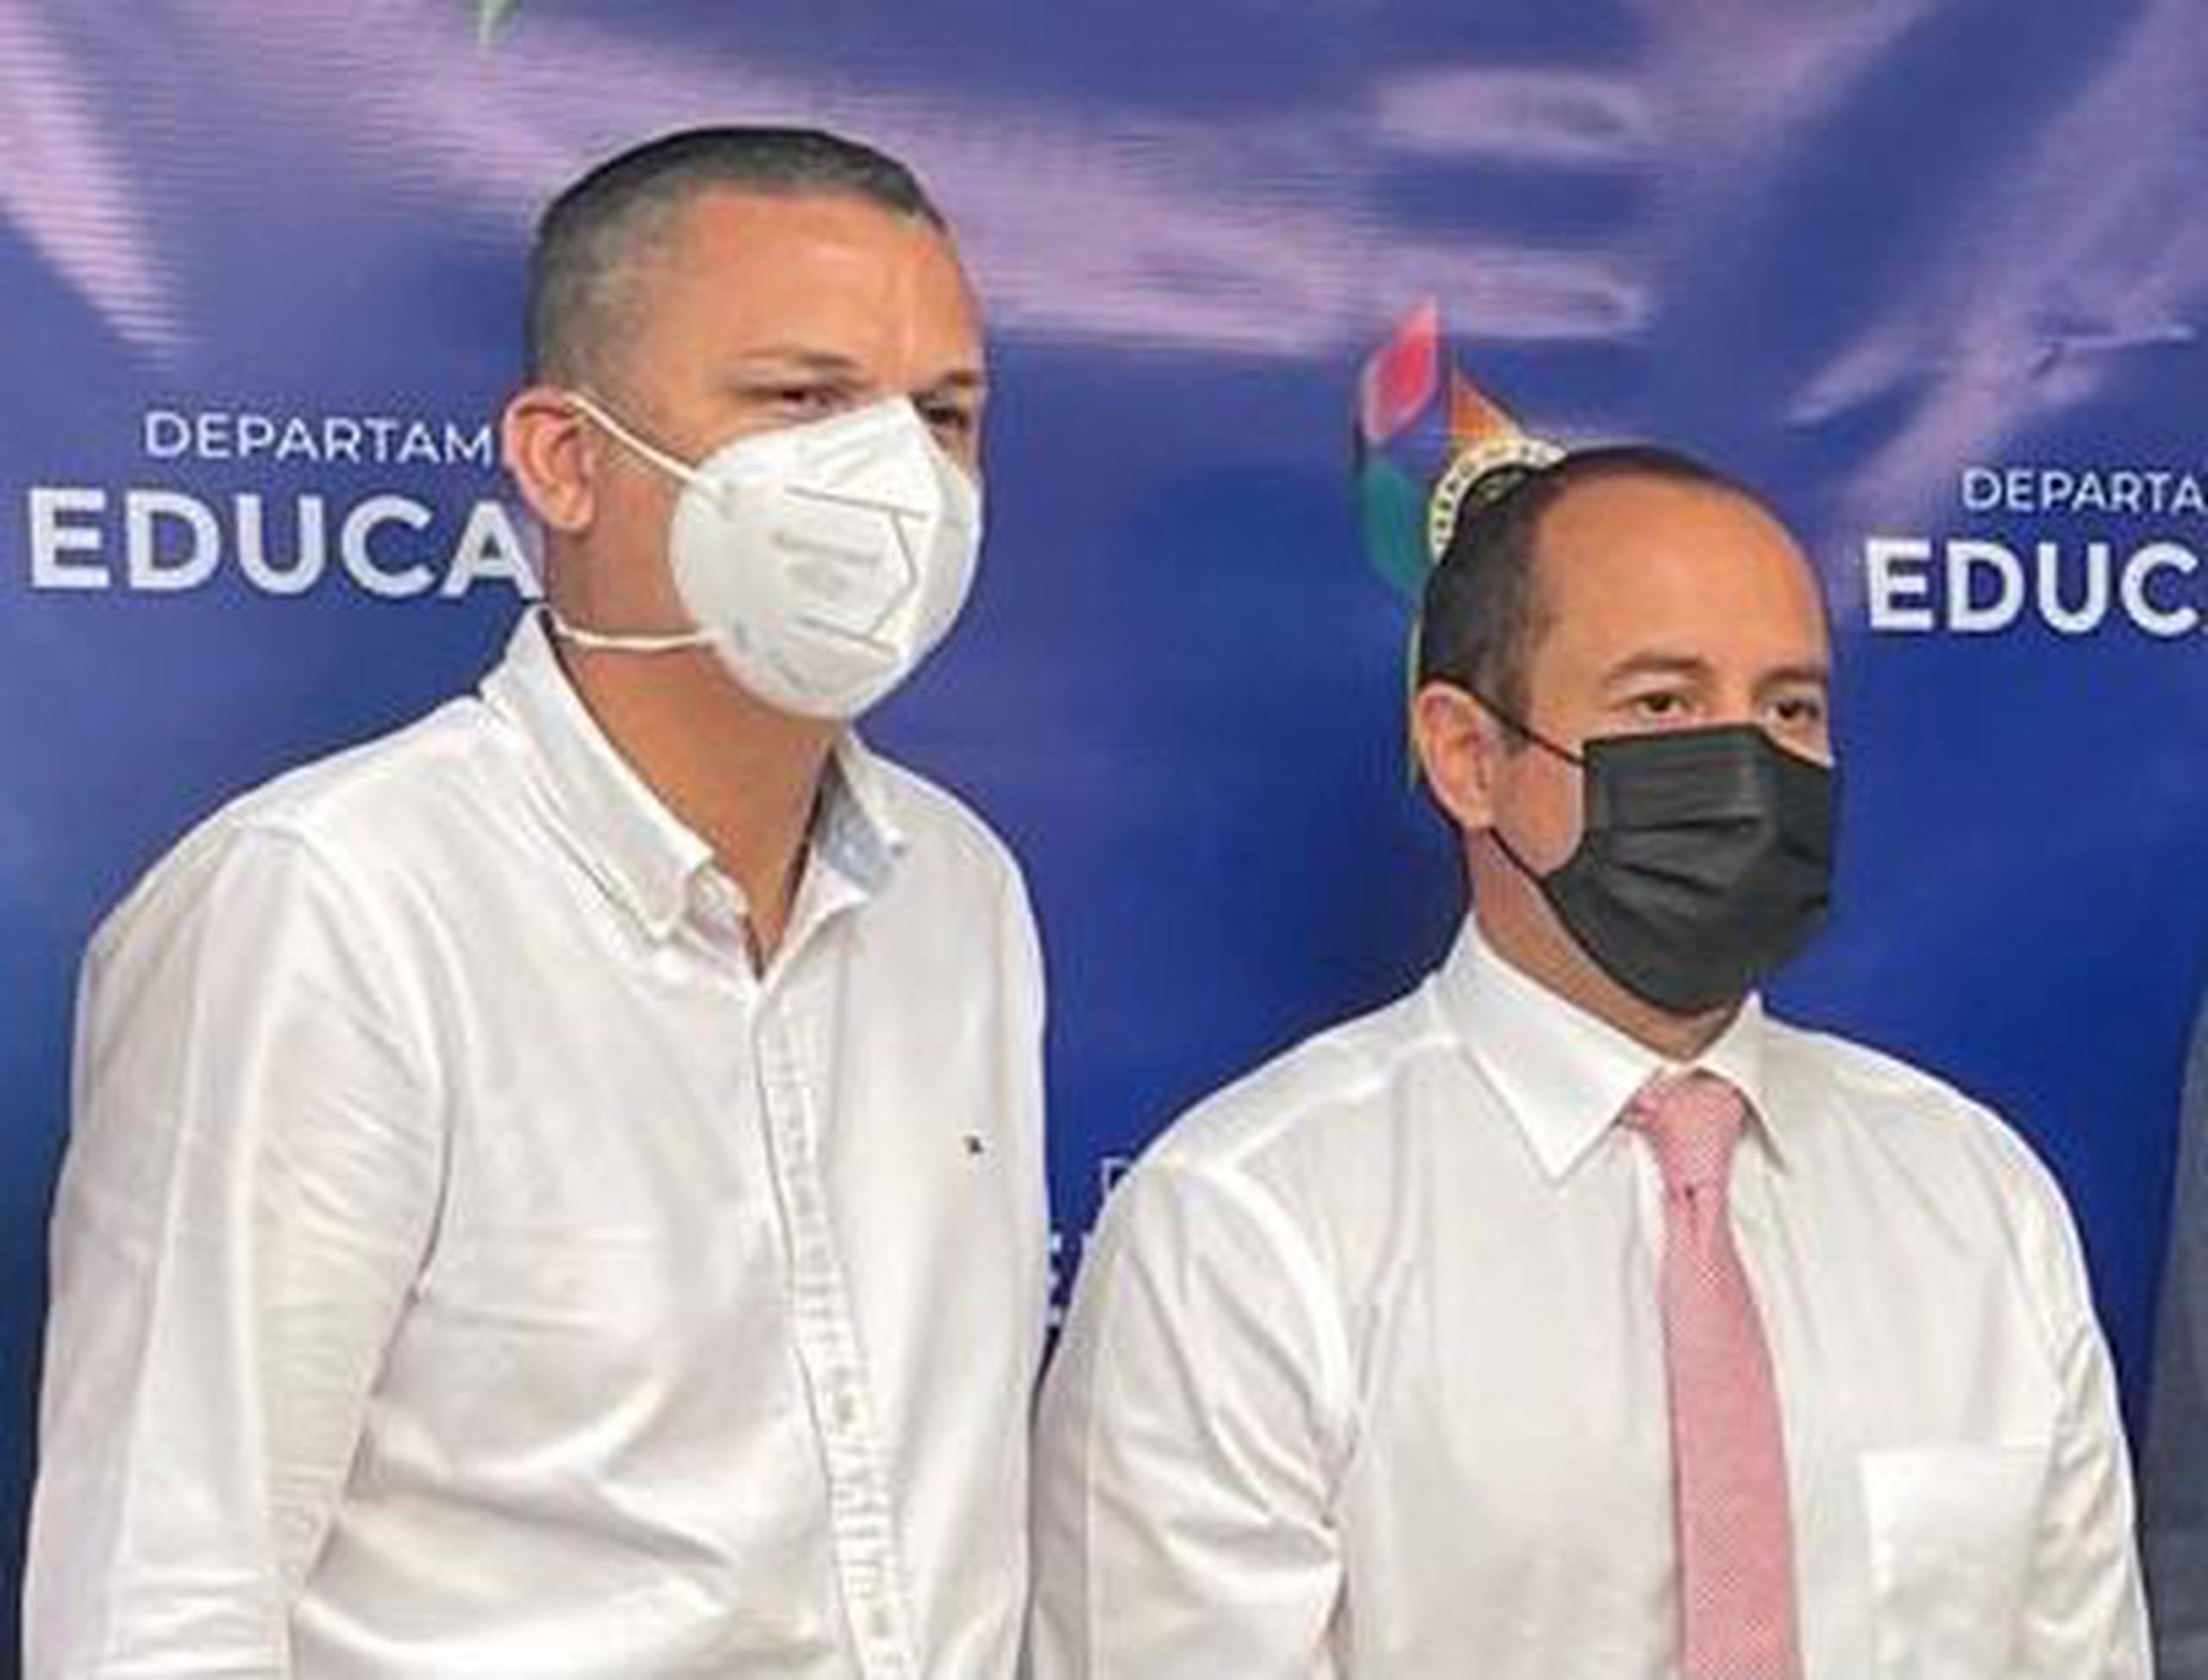 De izquierda a derecha, el alcalde de Guánica, Ismael ‘Titi’ Rodríguez Ramos, y el subsecretario de administración del Departamento de Educación (DE), Jesús González.